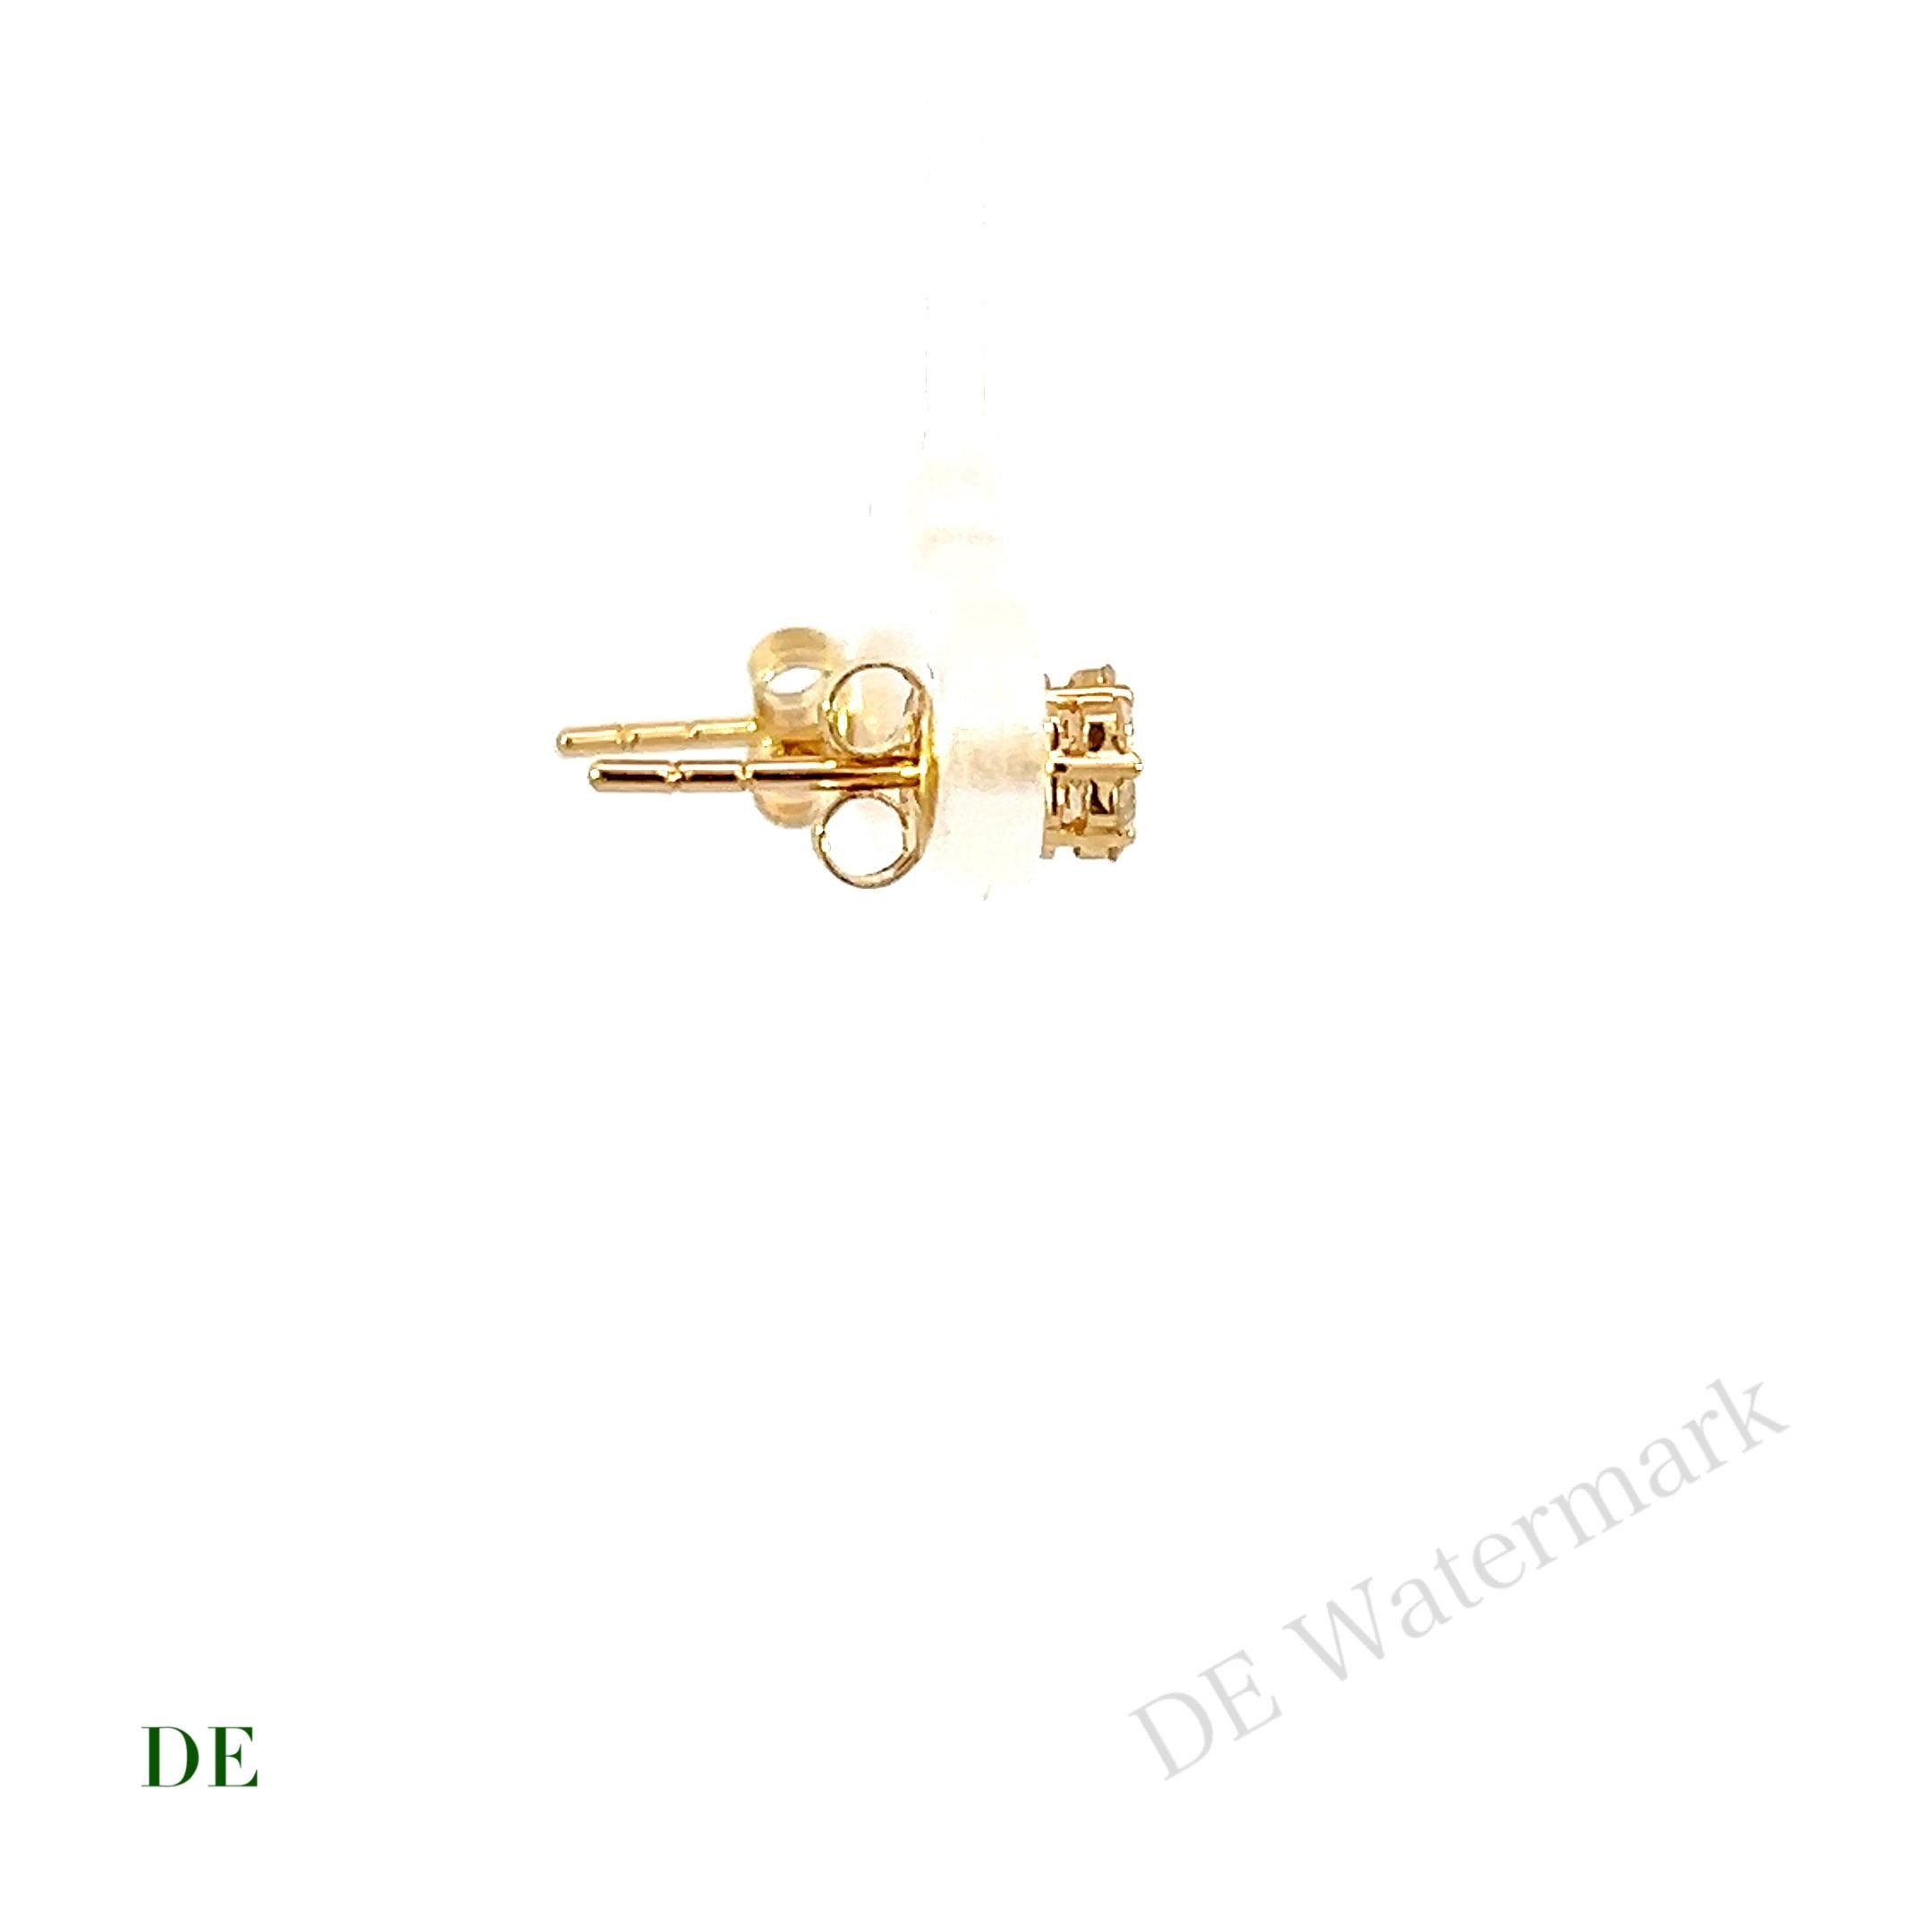 14k Gelbgold Minimalistischer .28 Karat Diamant-Cluster-Ohrstecker

Wir präsentieren unsere 14k Gelbgold Minimalist .28 Karat Diamant Cluster Ohrstecker. Diese Ohrringe sind eine perfekte Mischung aus Schlichtheit und Eleganz, entworfen für alle,